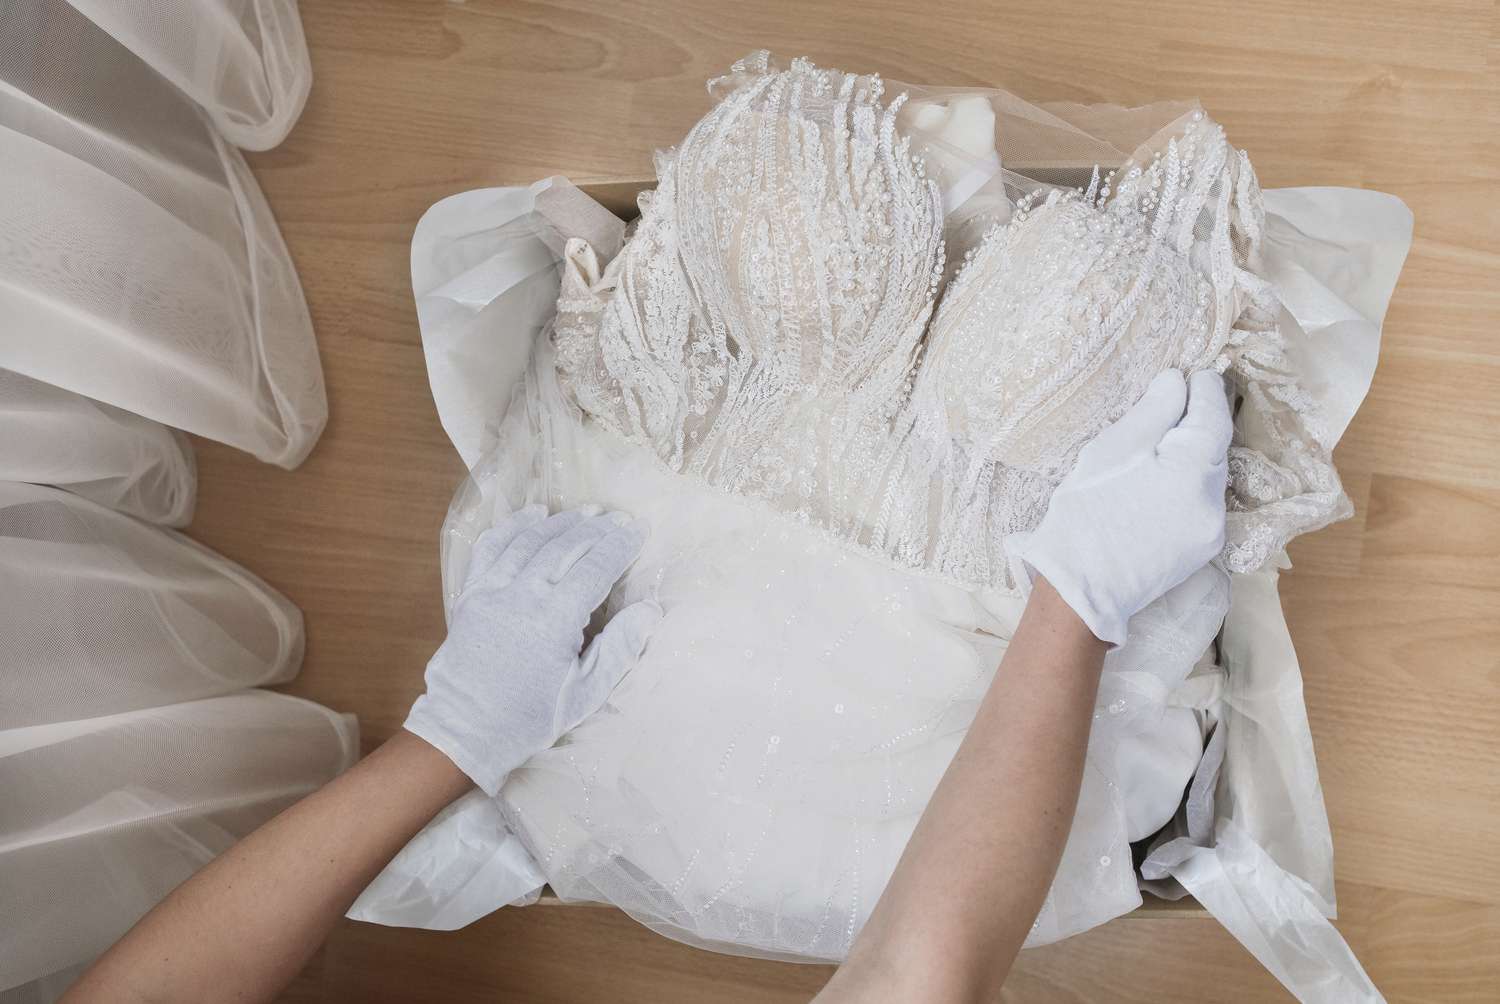 Hochzeitskleid wird in einer Schachtel mit weißen Handschuhen aufbewahrt